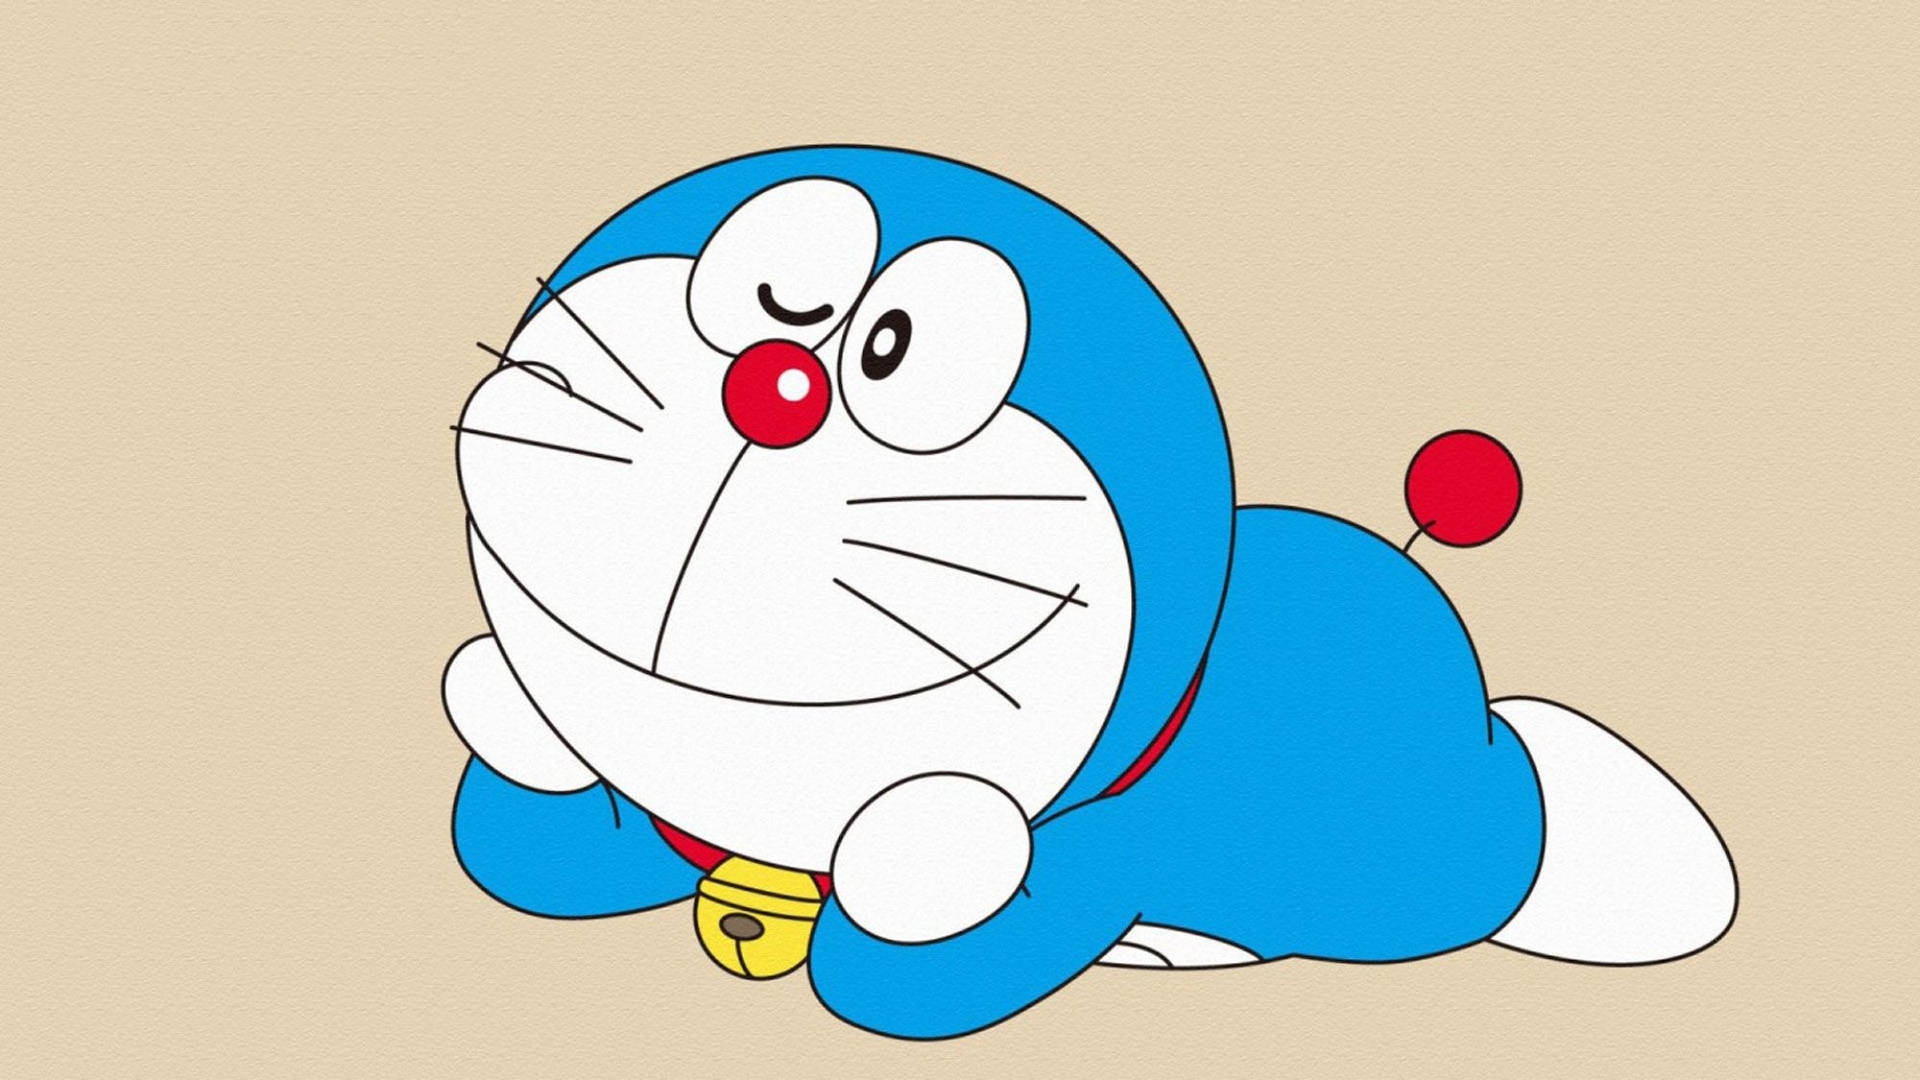 Free Doraemon Wallpaper Downloads, [300+] Doraemon Wallpapers for FREE |  